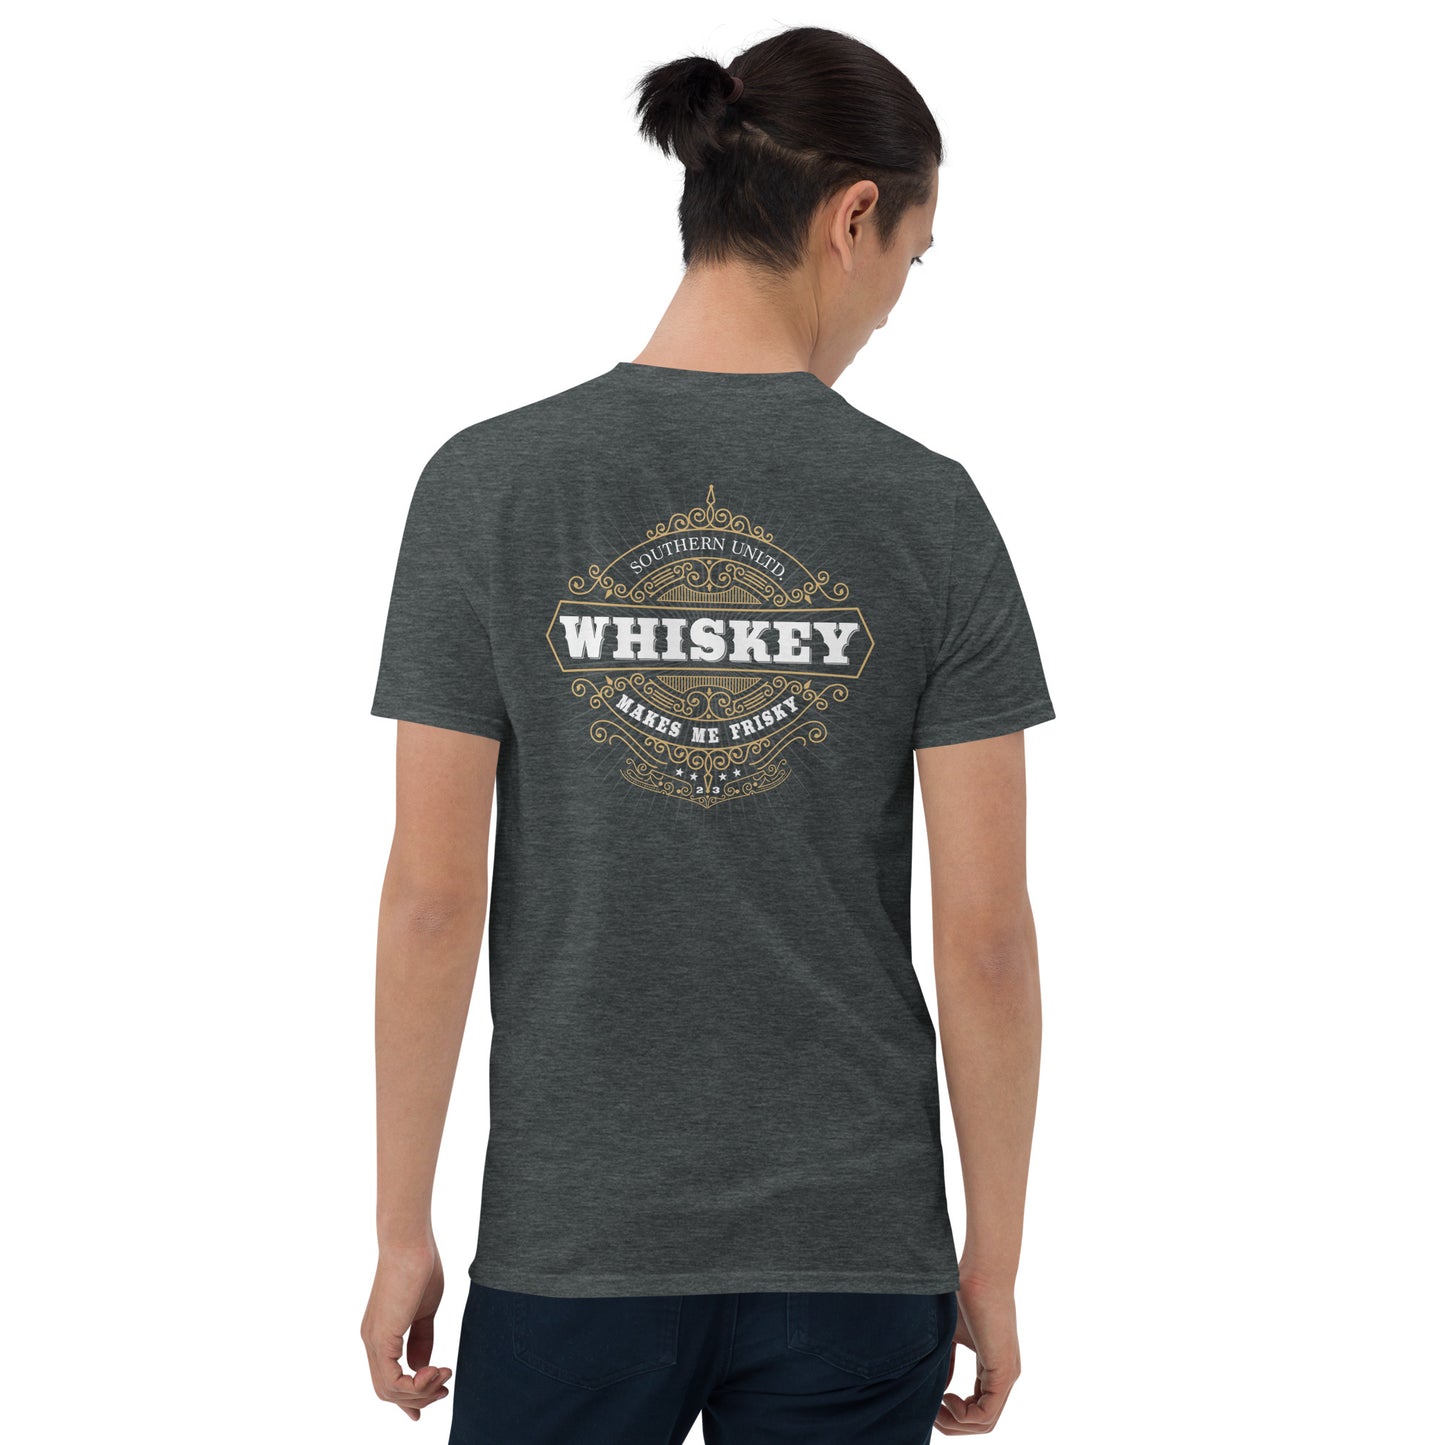 Whiskey Frisky